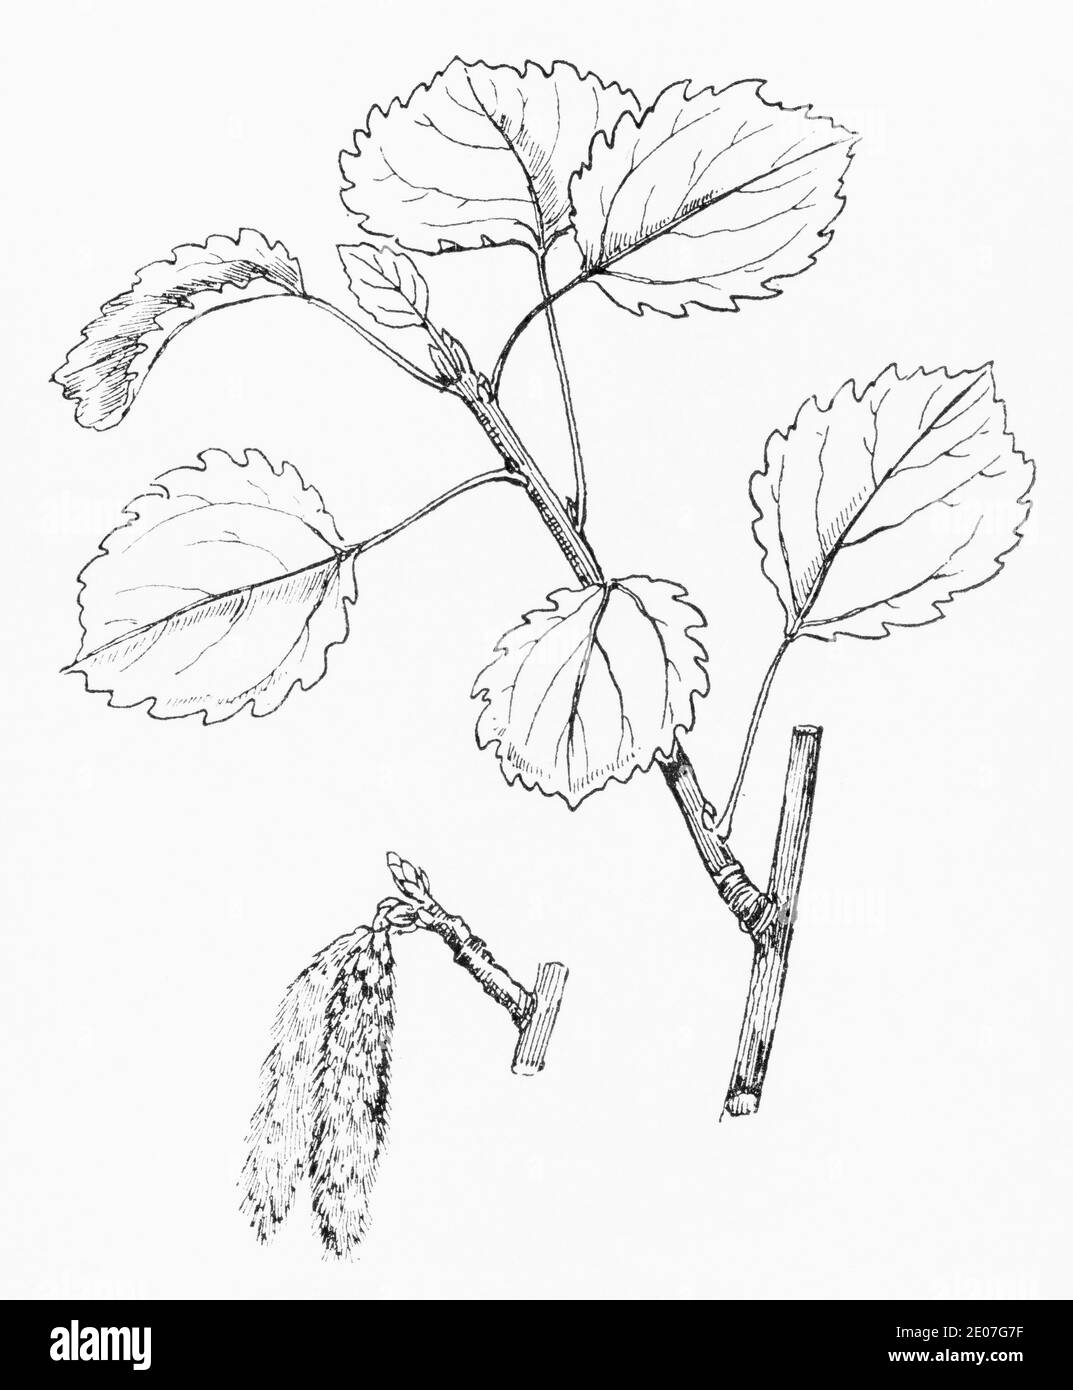 Alte botanische Illustration Gravur von Aspen / Populus tremula. Traditionelle Heilkräuter Pflanze. Siehe Hinweise Stockfoto